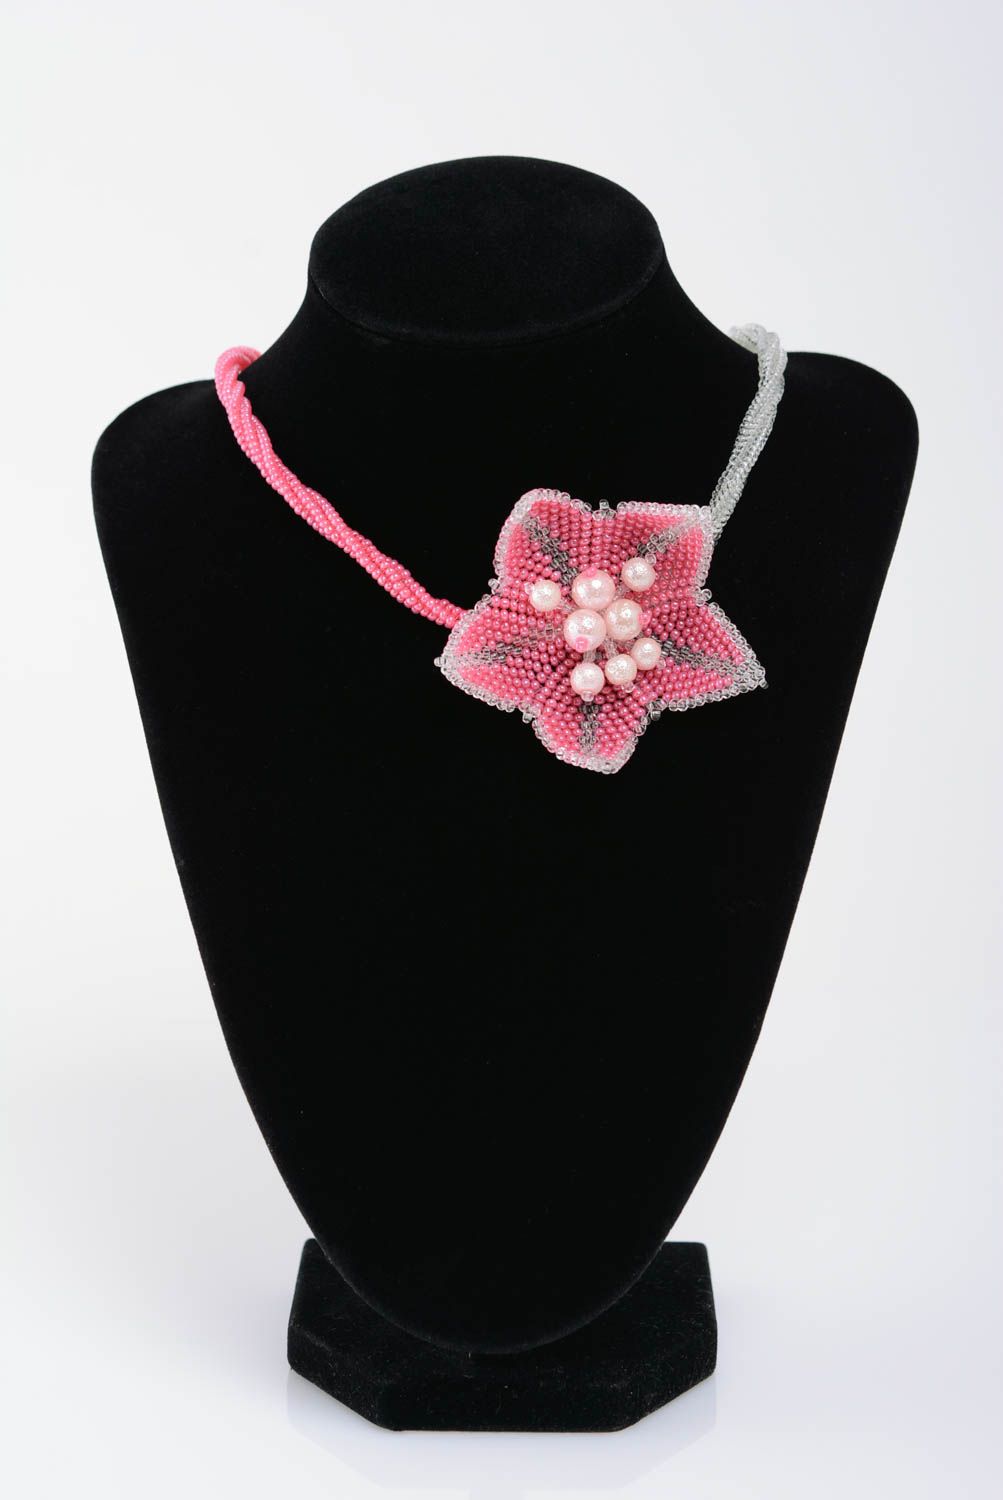 Колье из бисера и бусин розовое с цветком нежное женское стильное ручной работы фото 3